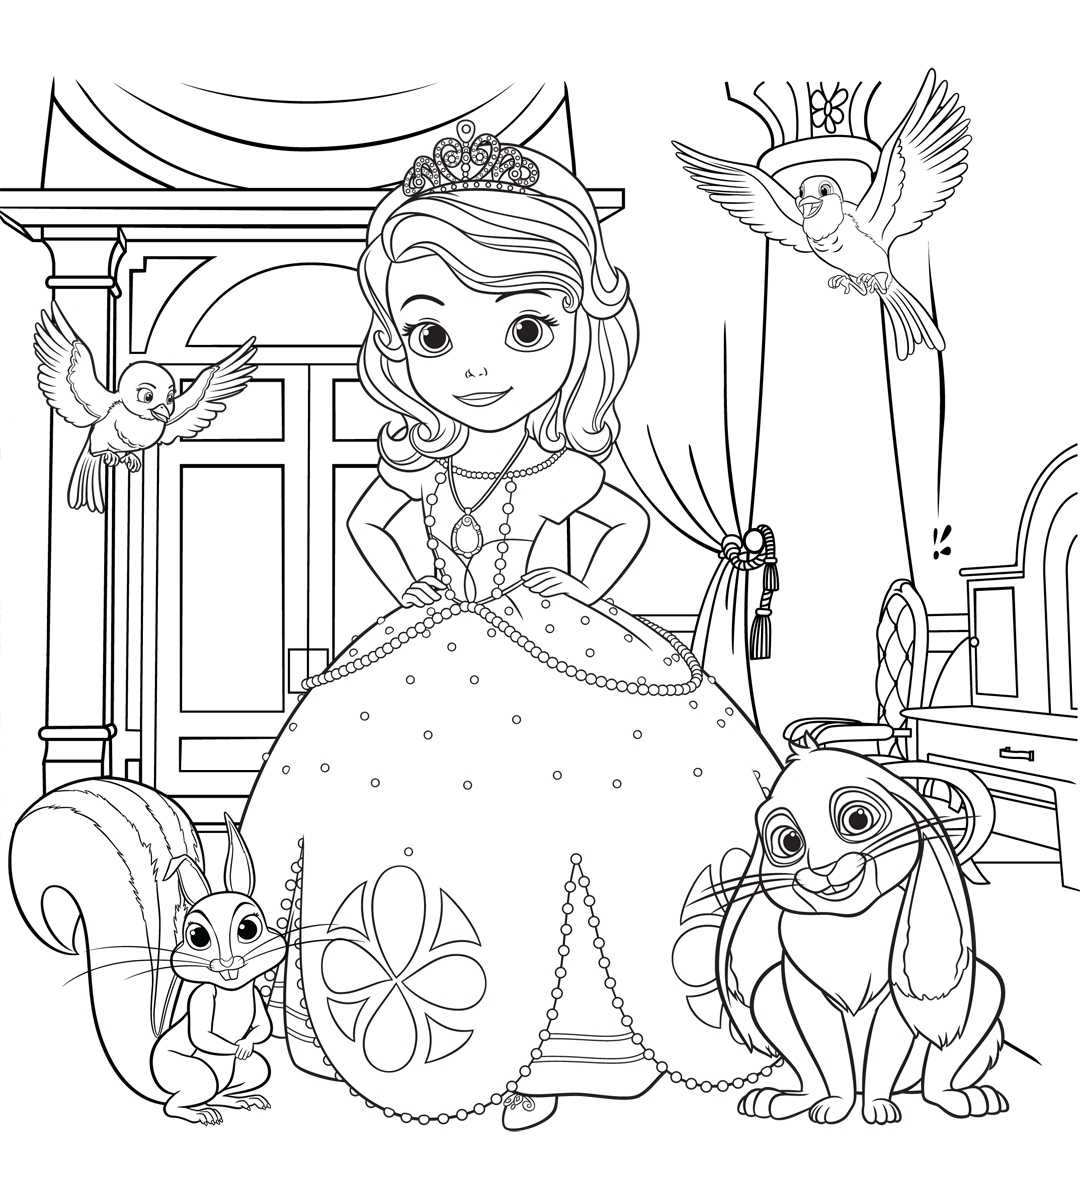 Раскраски Золушка Раскраски с принцессой из мультфильма Дисней Золушка и хрустальная туфелька Раскраски для девочек 3-10 лет Распечатать онлайн